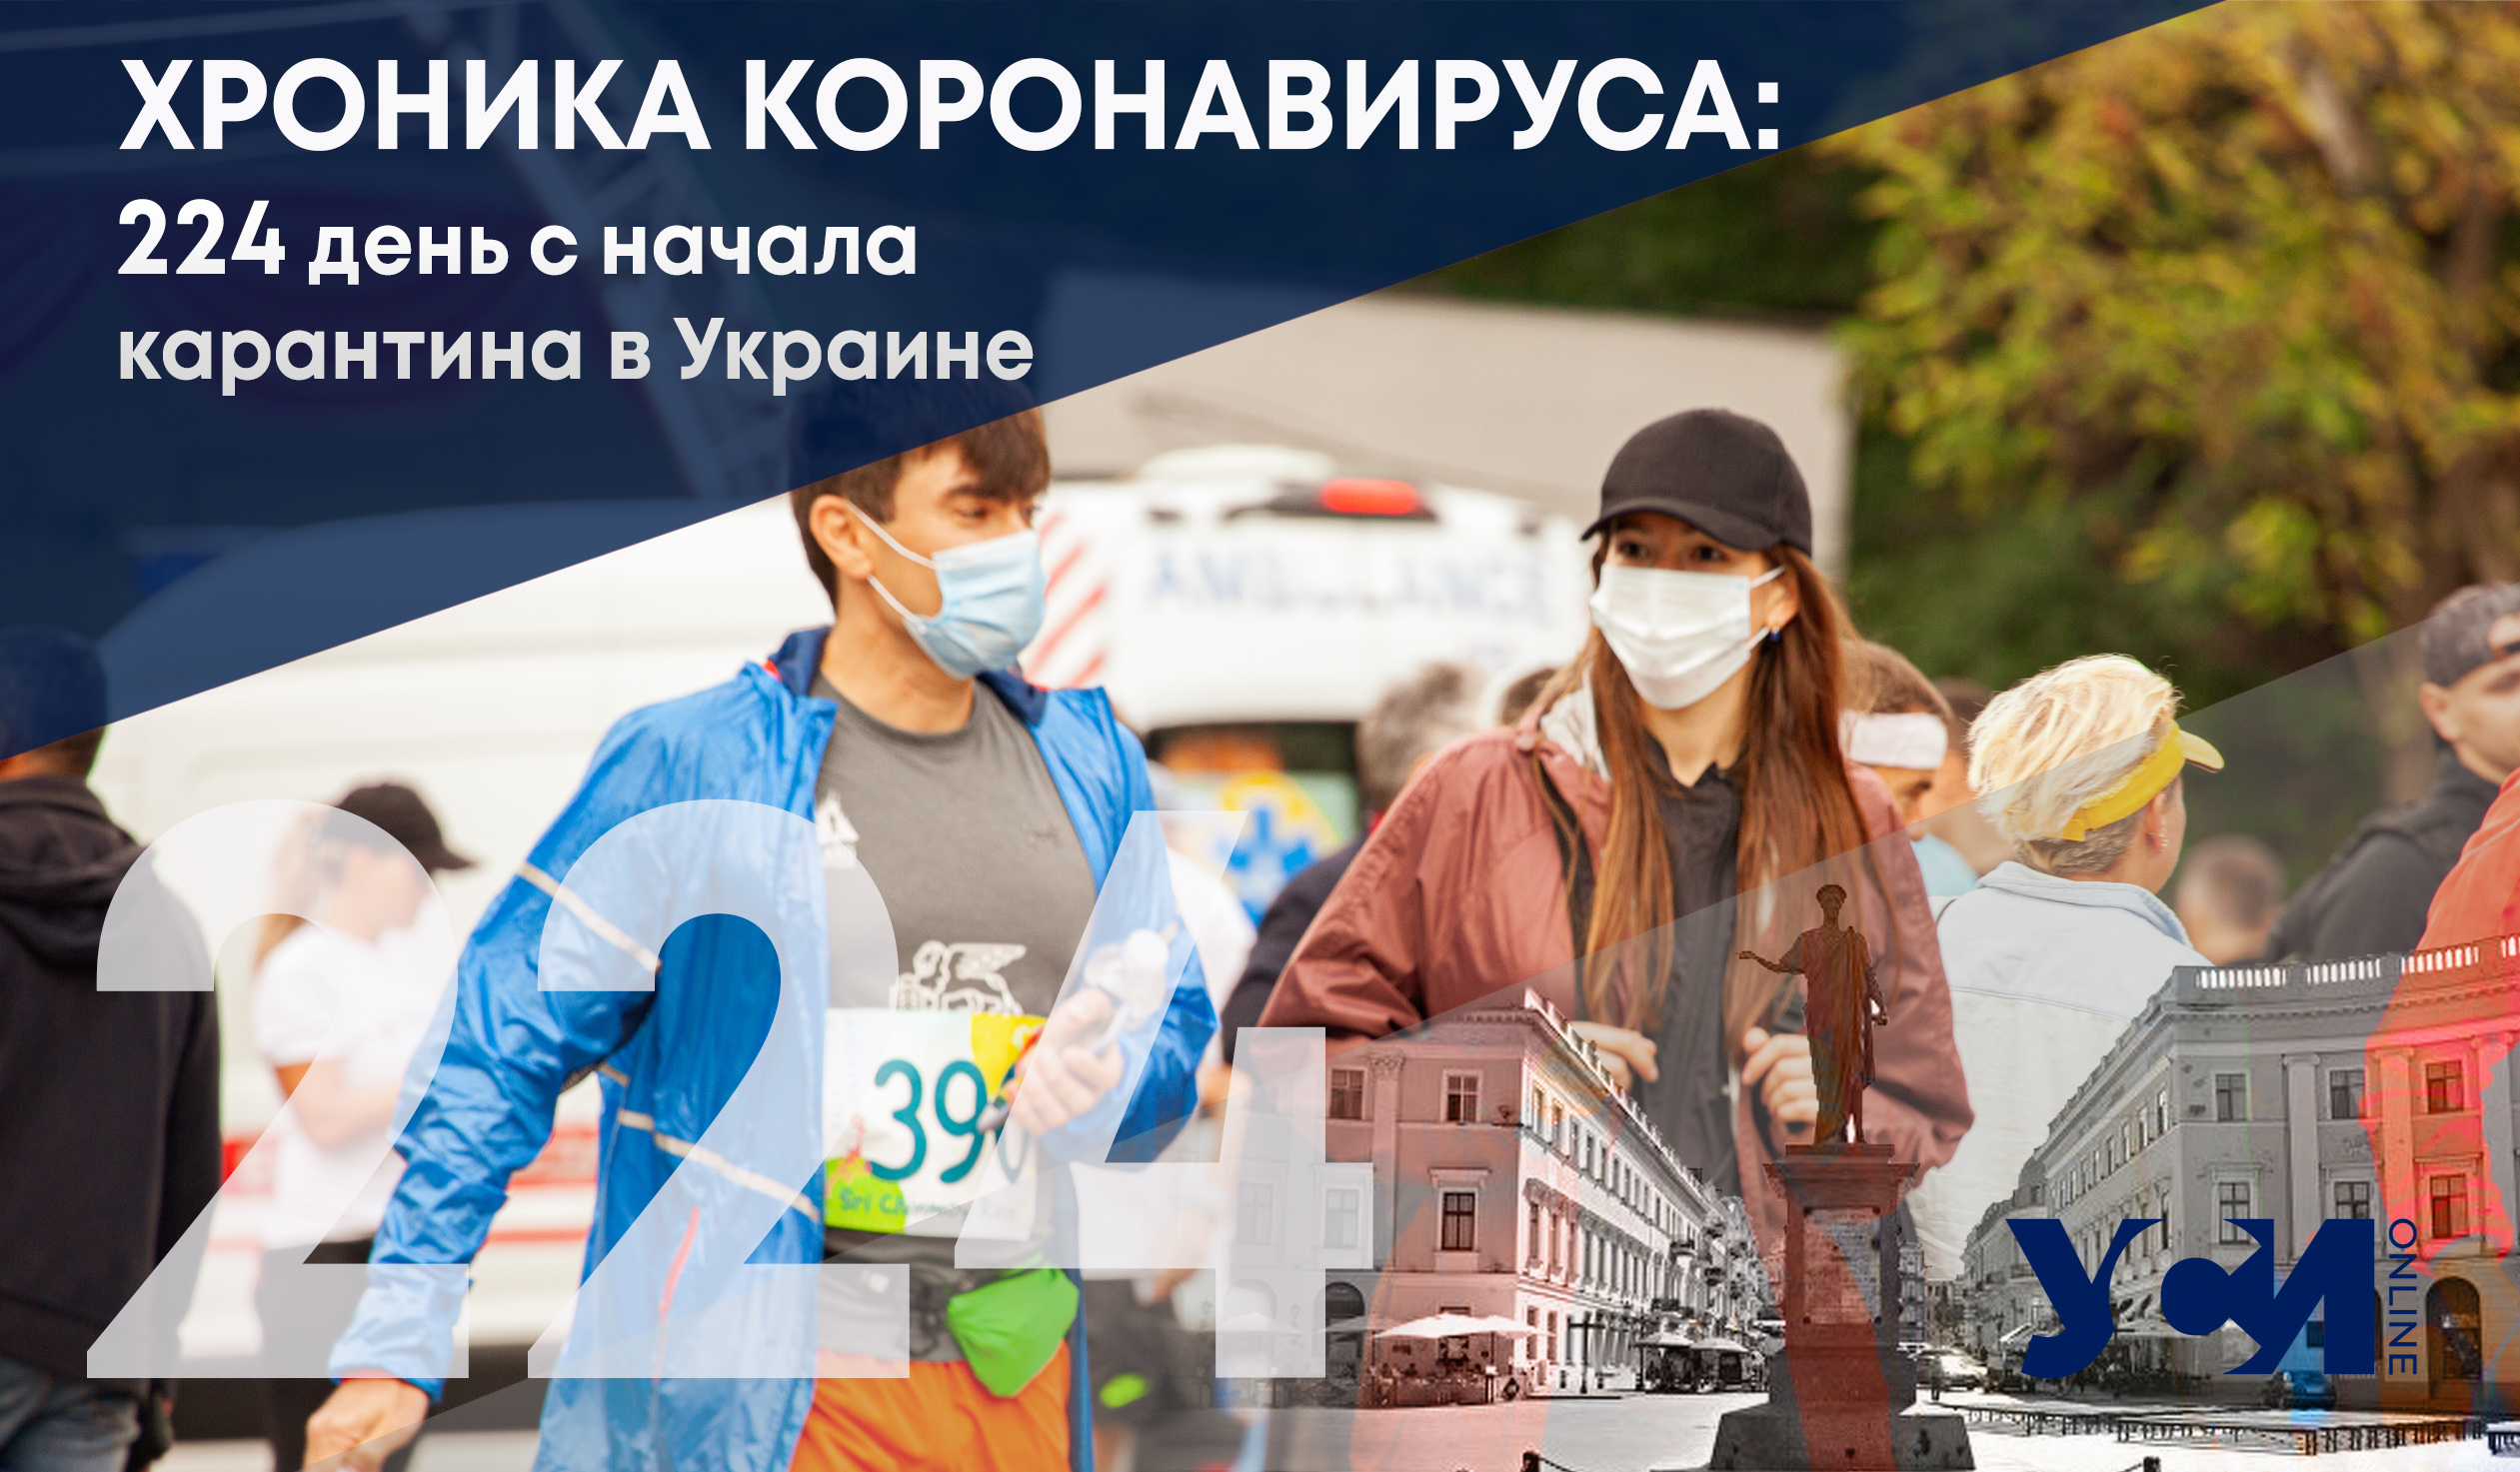 Хроника коронавируса: новые антирекорды на 224-й день с начала карантина в Украине «фото»